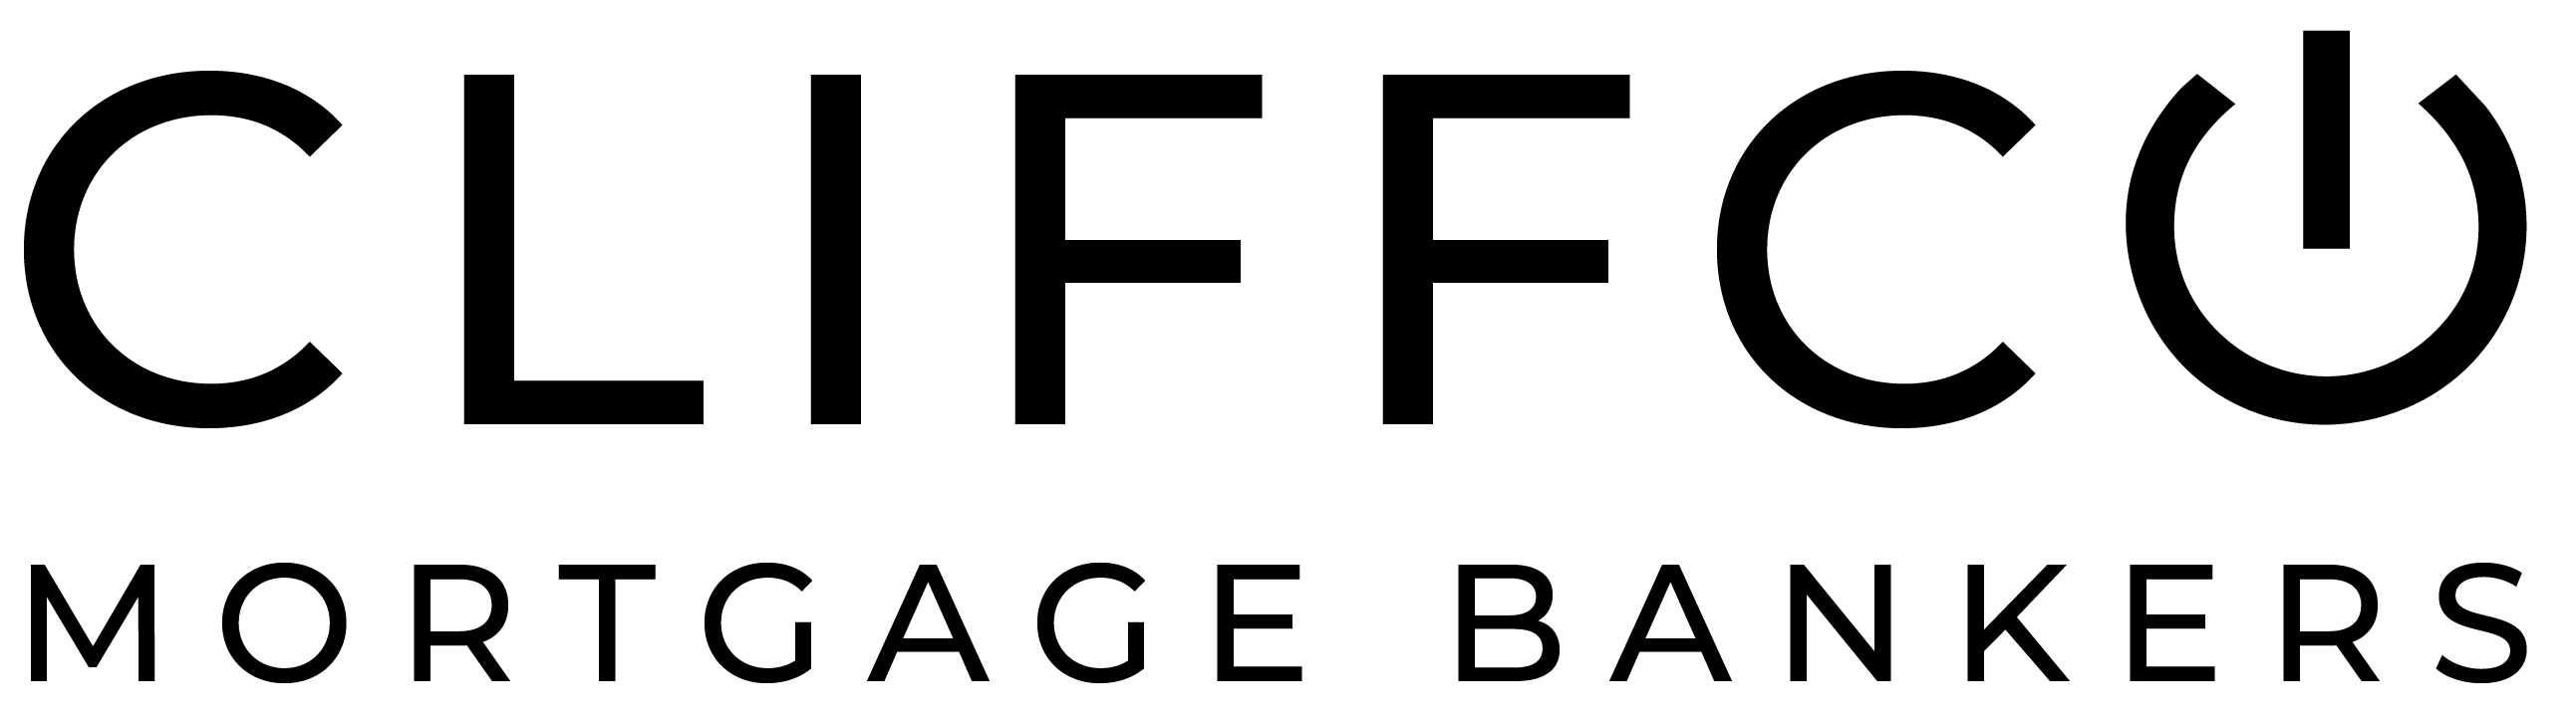 Ryan Riddle Logo